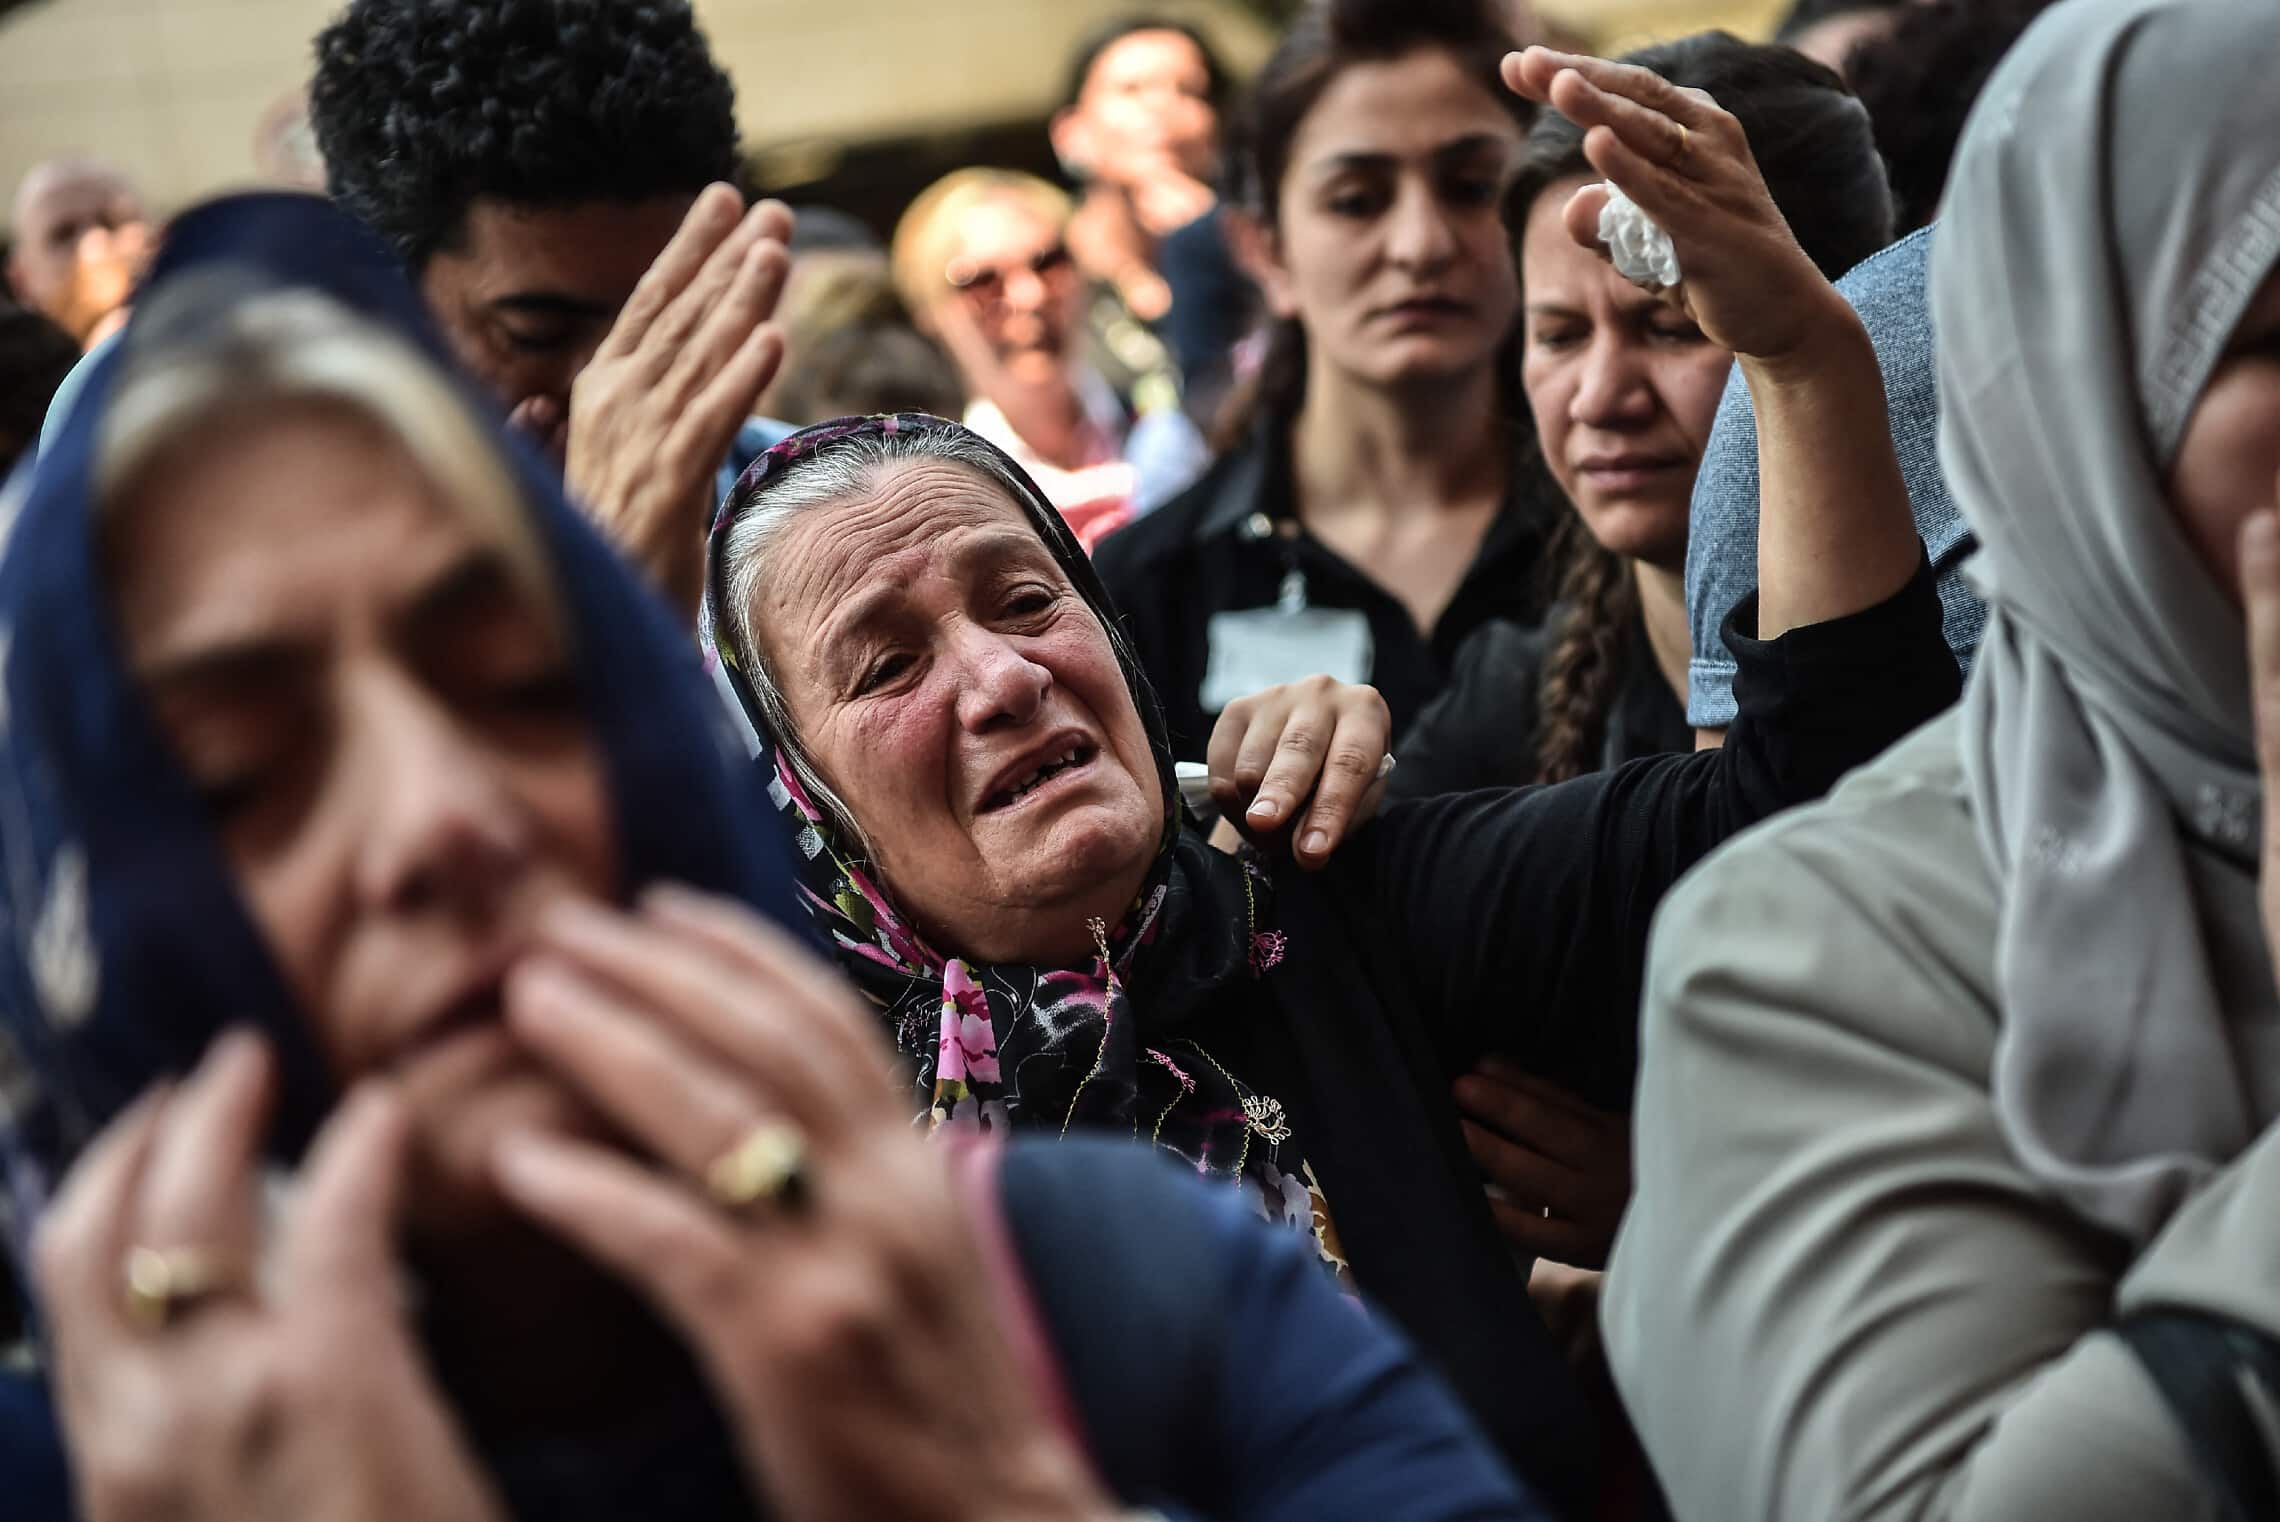 קרובי משפחה של קורבנות פיגוע ההתאבדות בשדה התעופה הבינלאומי באיסטנבול בוכים בטקס לציון יום השנה לפיגוע, 28 ביוני 2017 (צילום: OZAN KOSE / AFP)